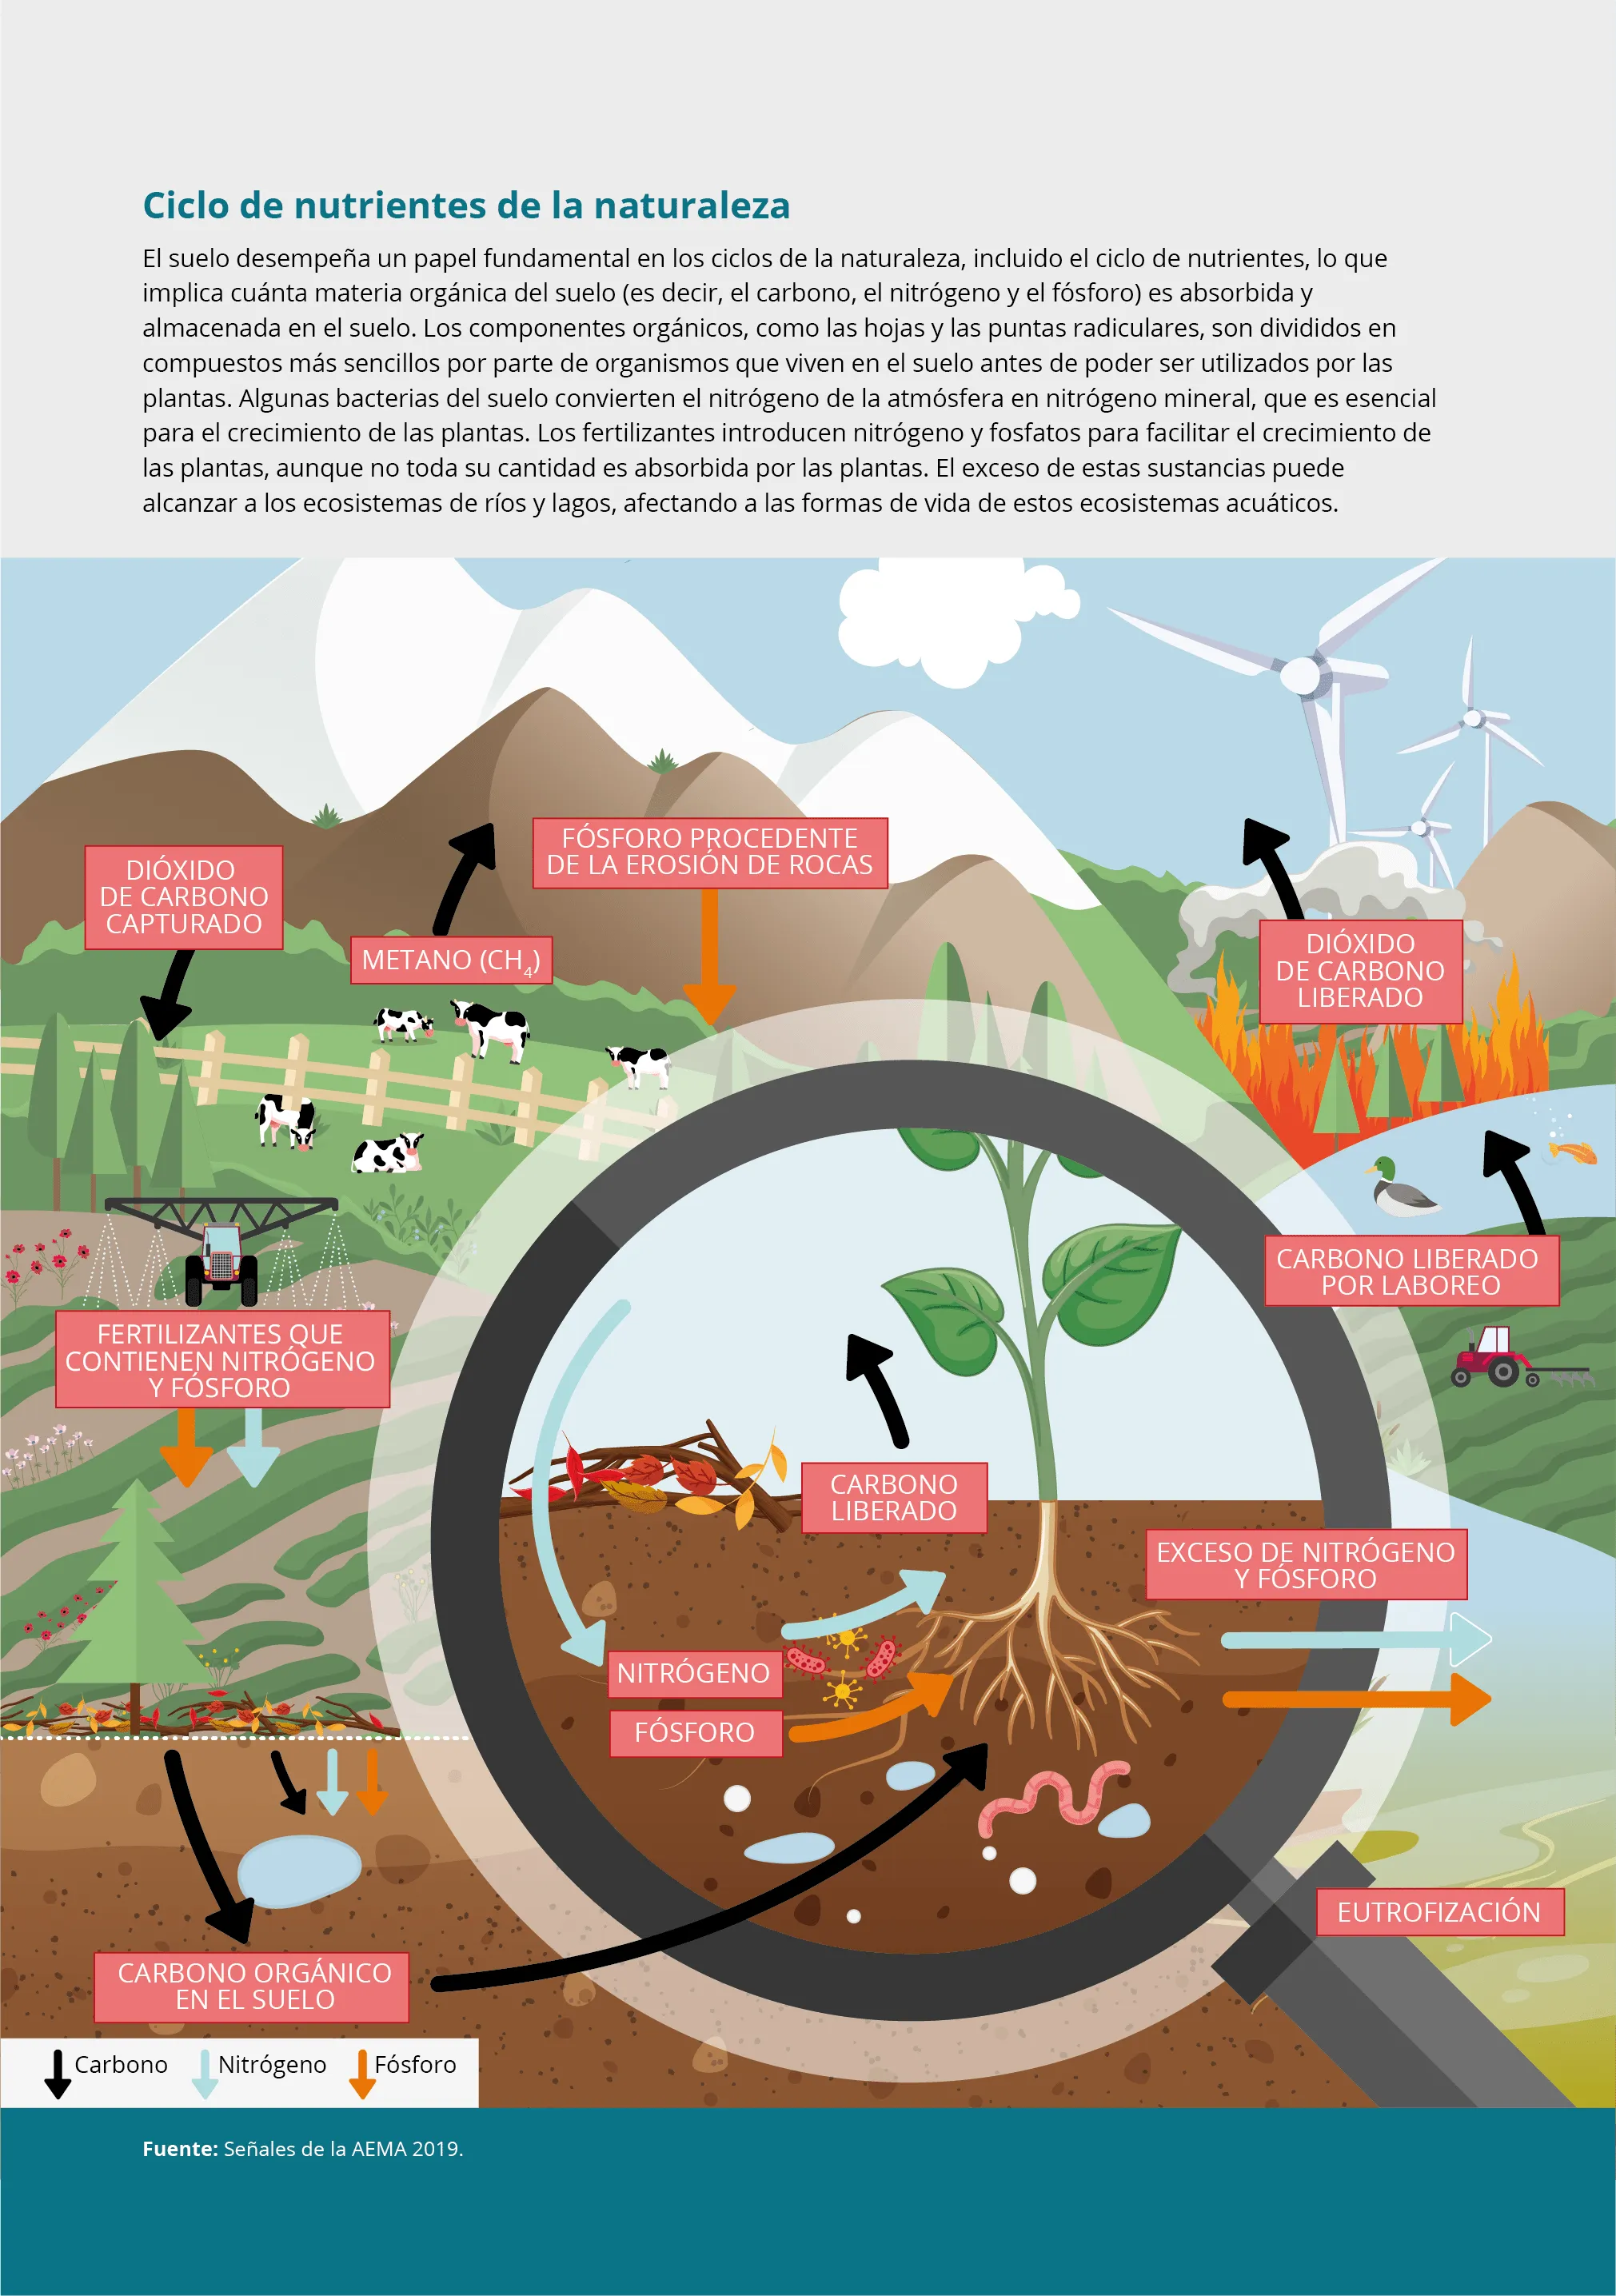 Ciclo de nutrientes de la naturaleza — Agencia Europea de Medio Ambiente